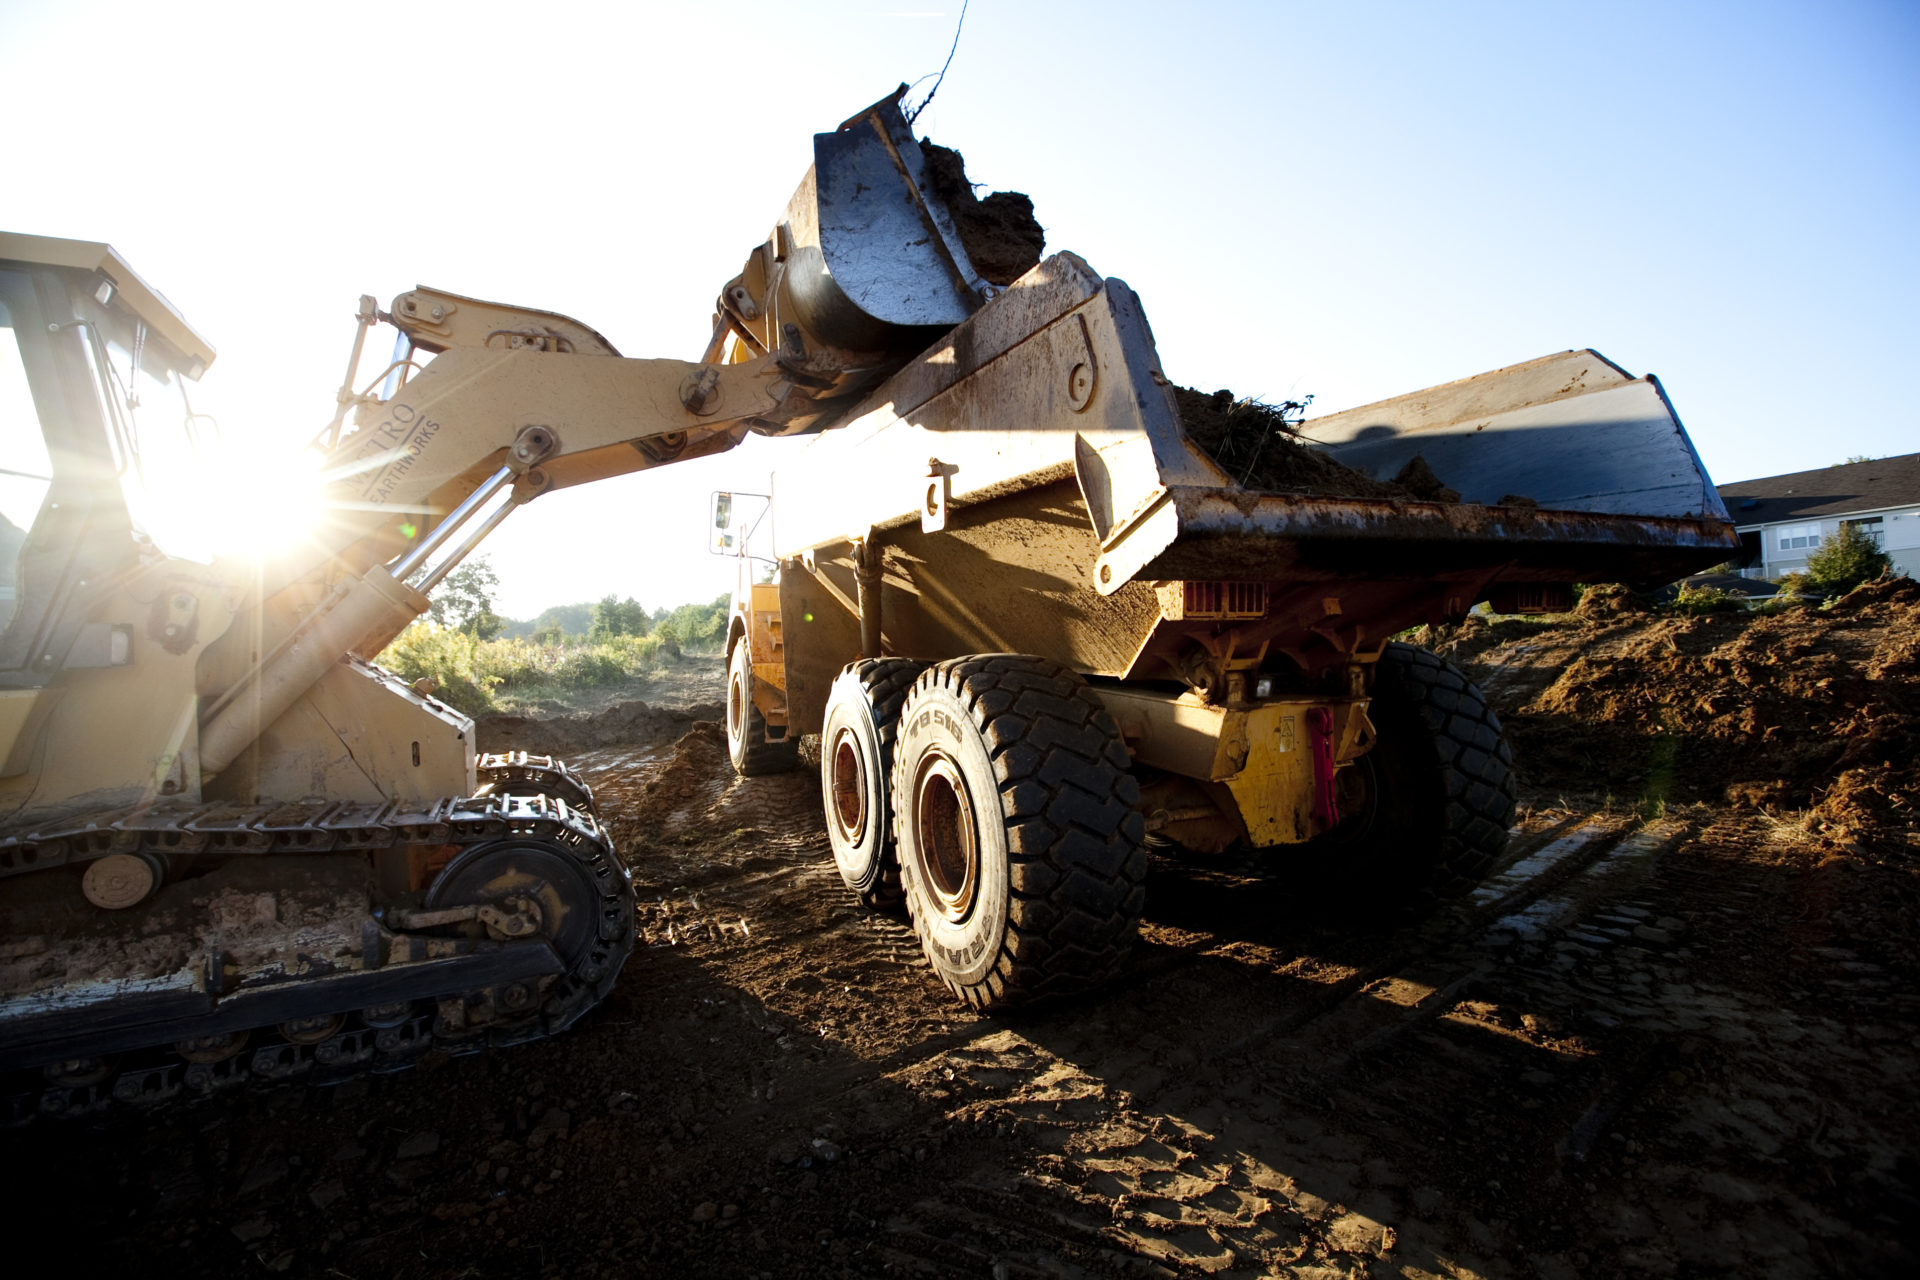 Bulldozer dumping dirt into dump truck on a jobsite